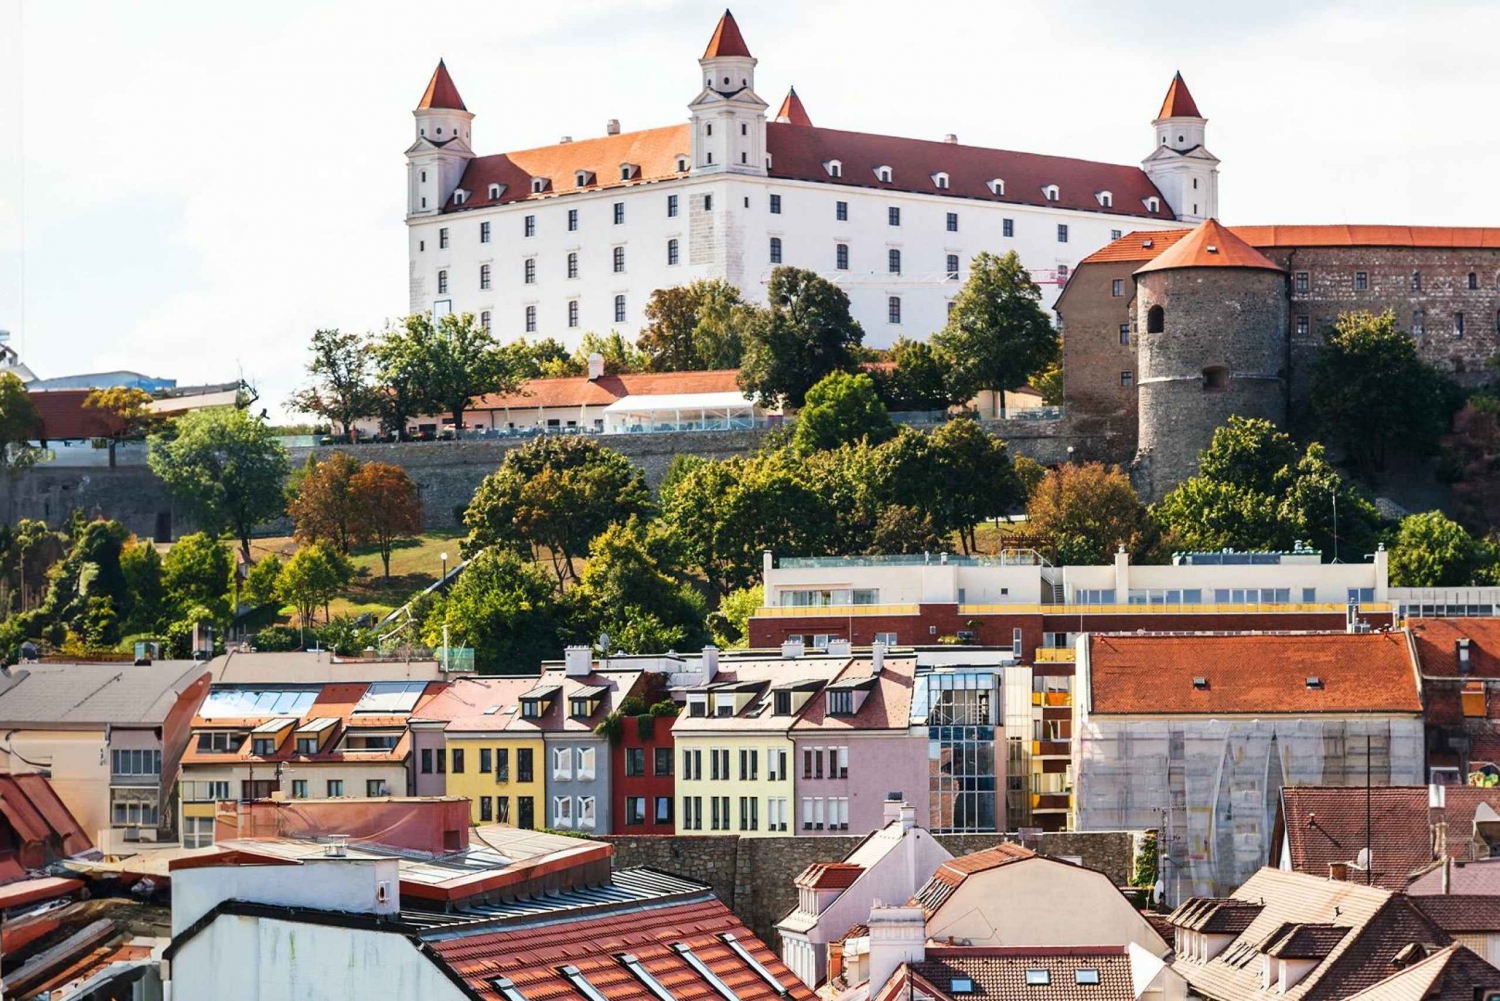 Bratislava en une excursion d'une journée en voiture depuis Vienne